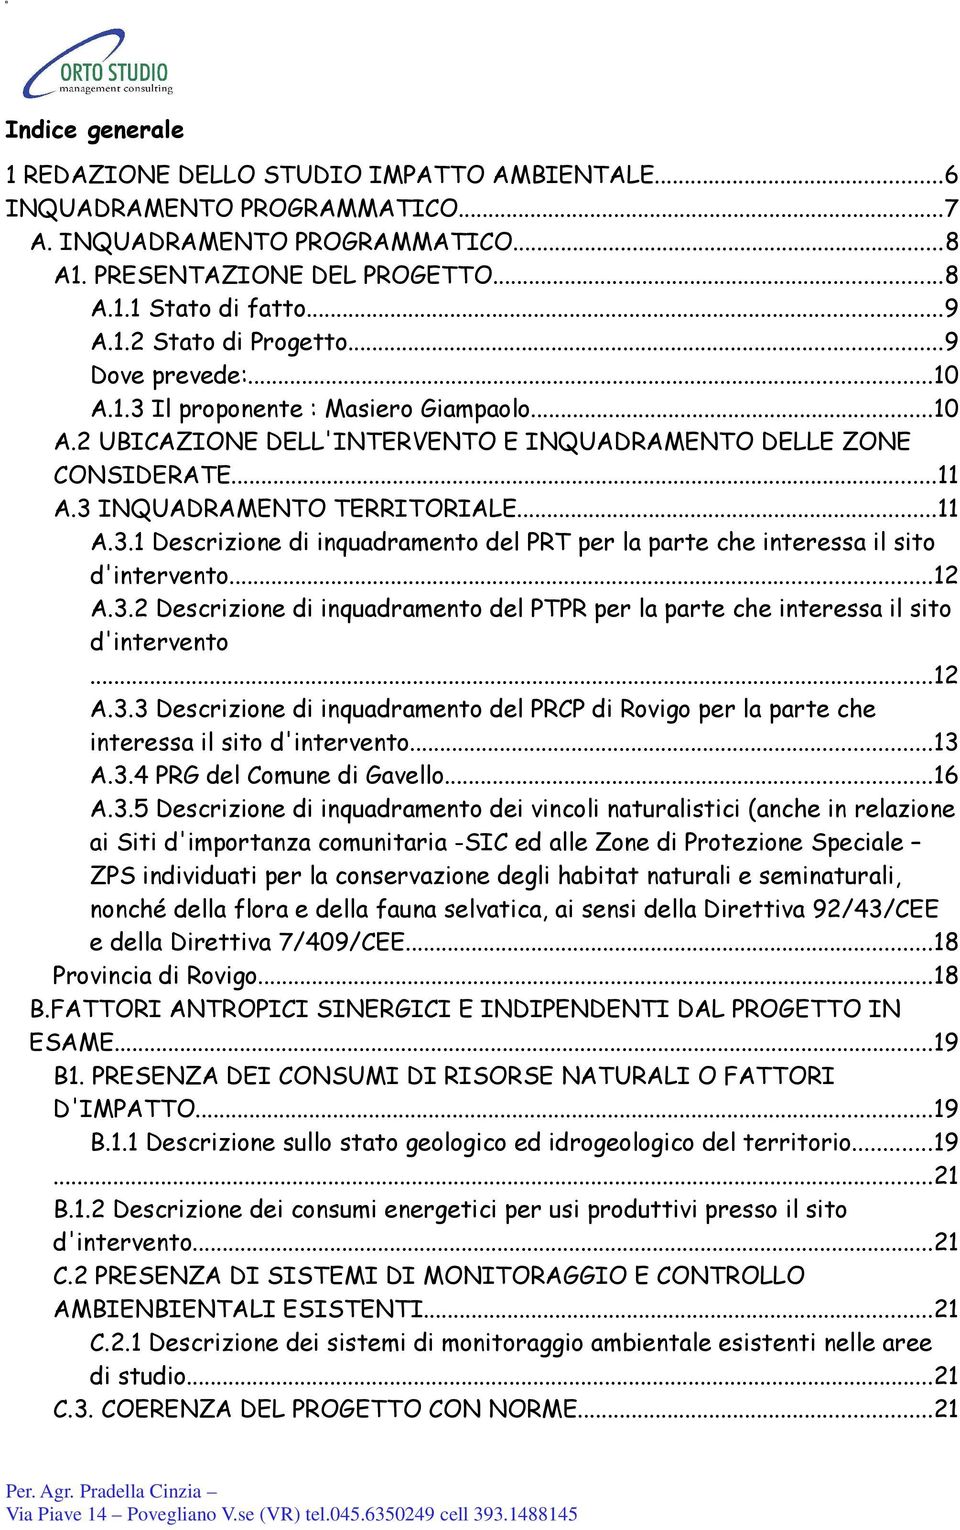 ..12 A.3.2 Descrizione di inquadramento del PTPR per la parte che interessa il sito d'intervento...12 A.3.3 Descrizione di inquadramento del PRCP di Rovigo per la parte che interessa il sito d'intervento.